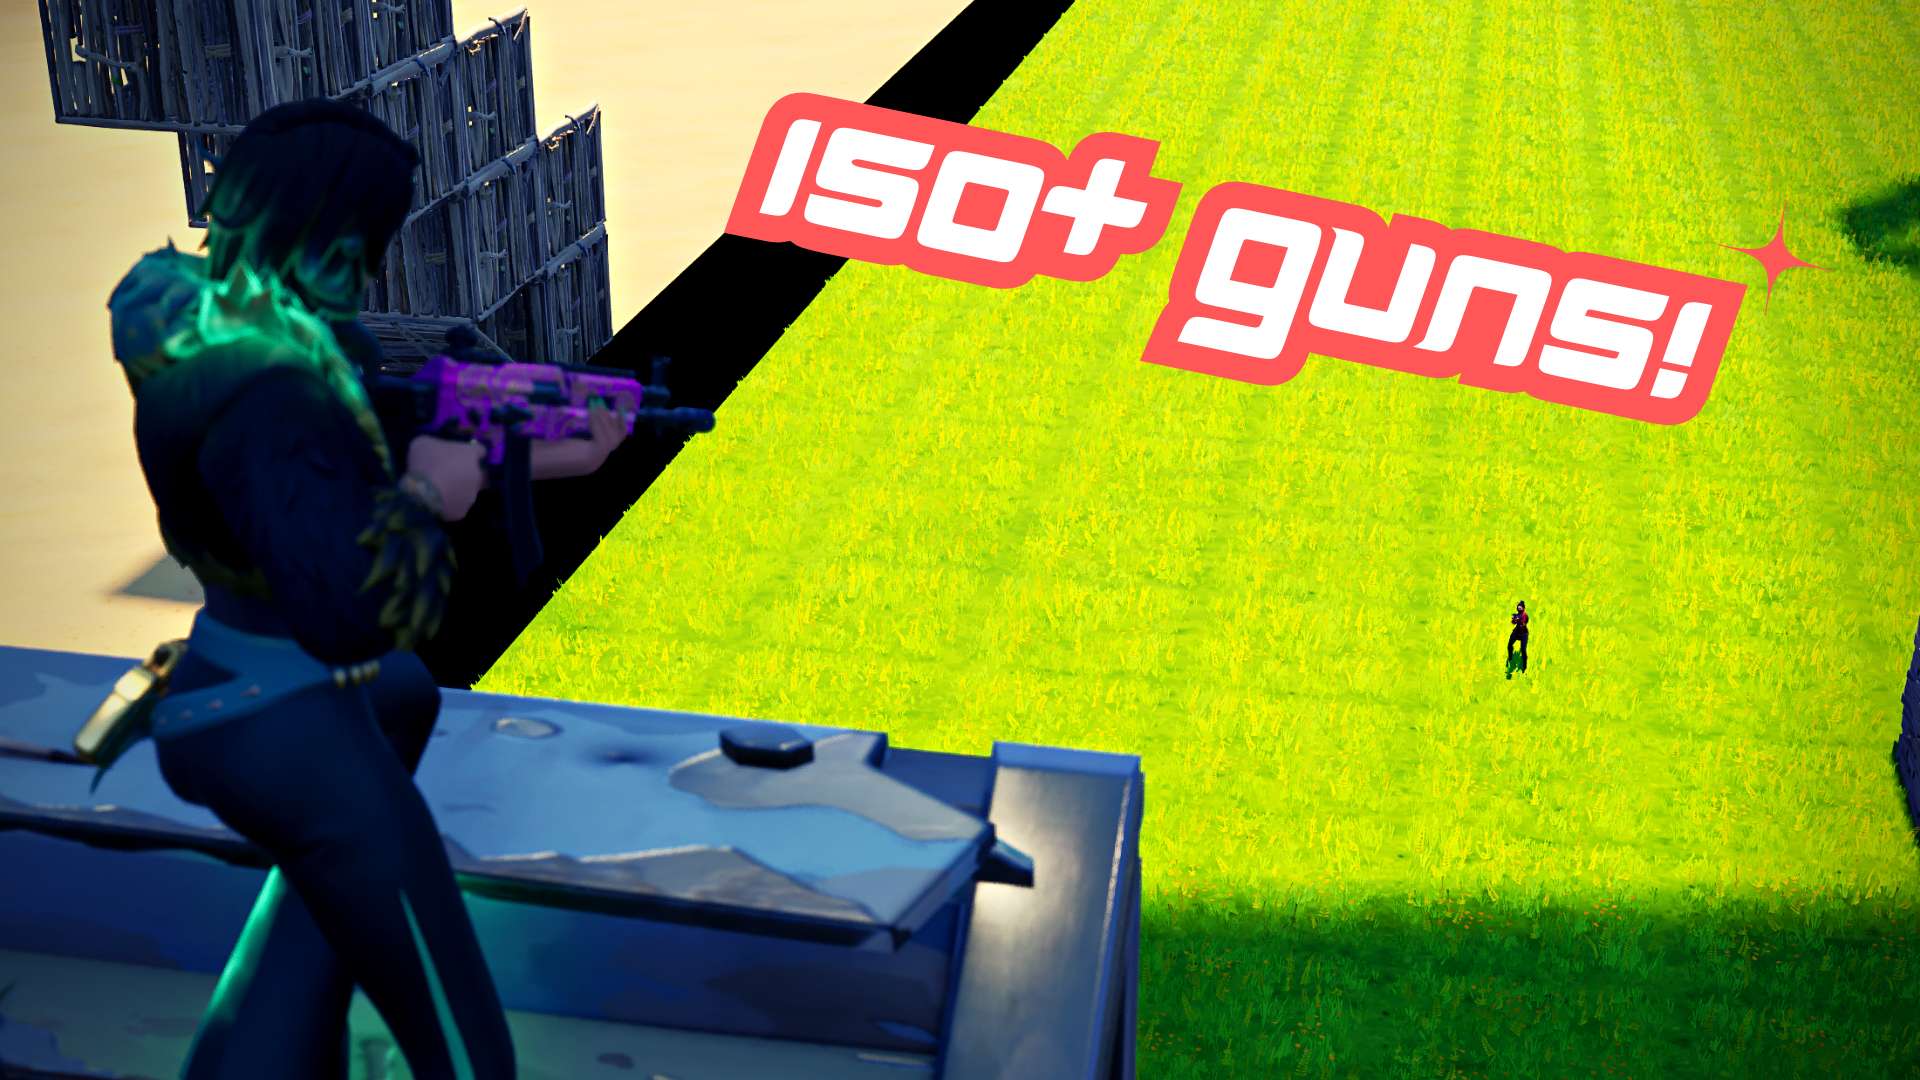 THE GUN GAME PIT image 2